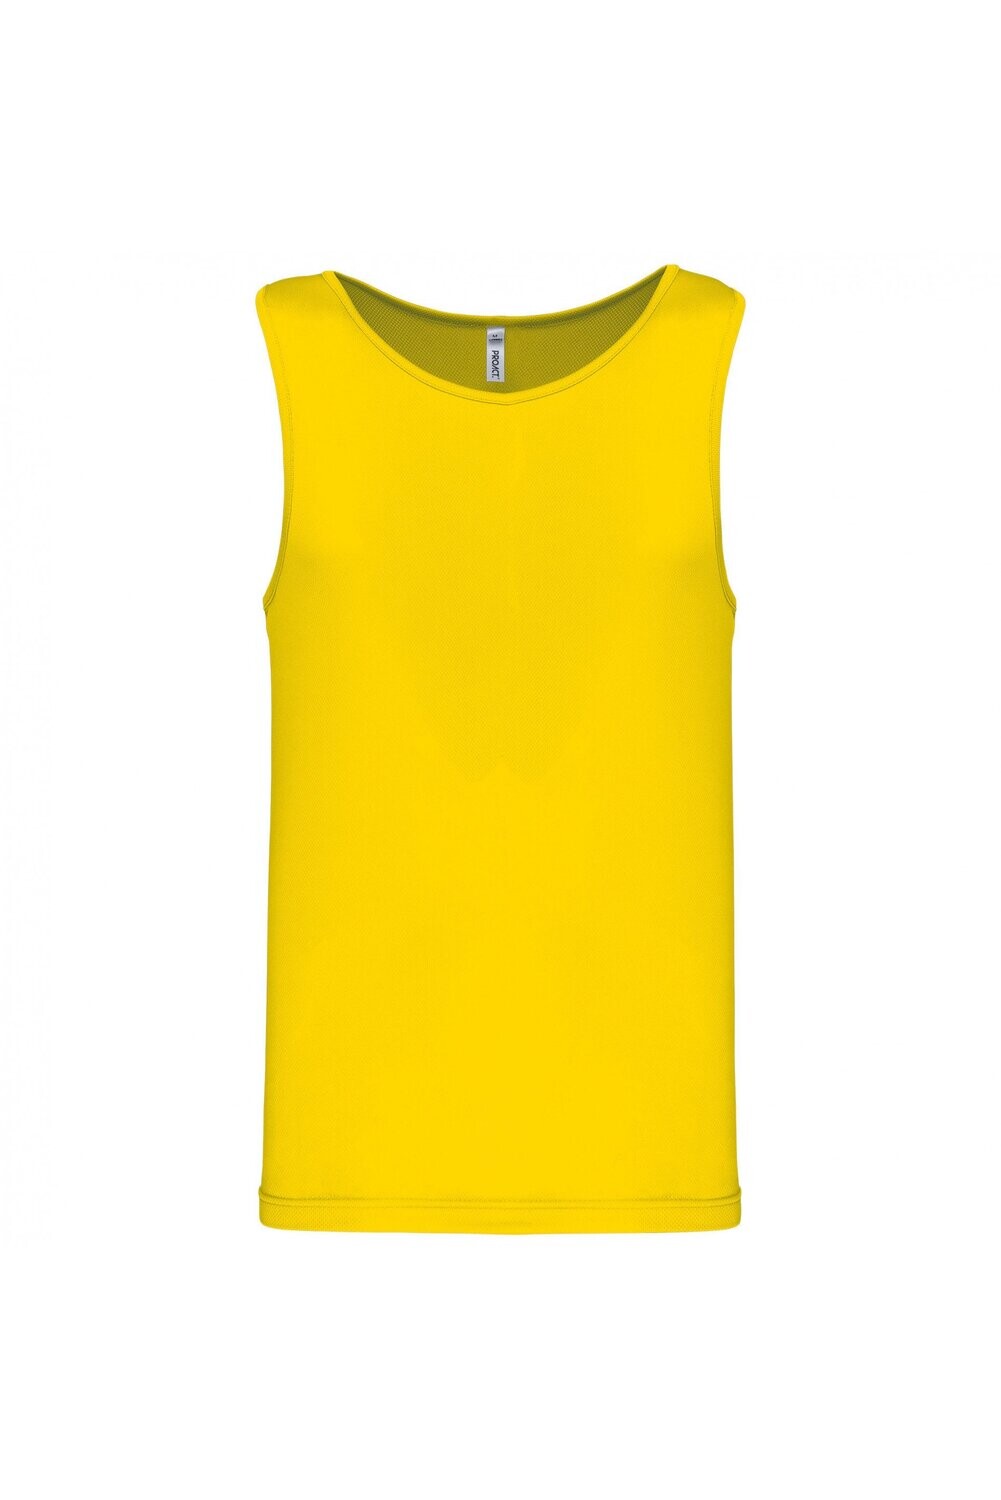 Herren Basic Sport Funktionsshirt ärmellos Yellow